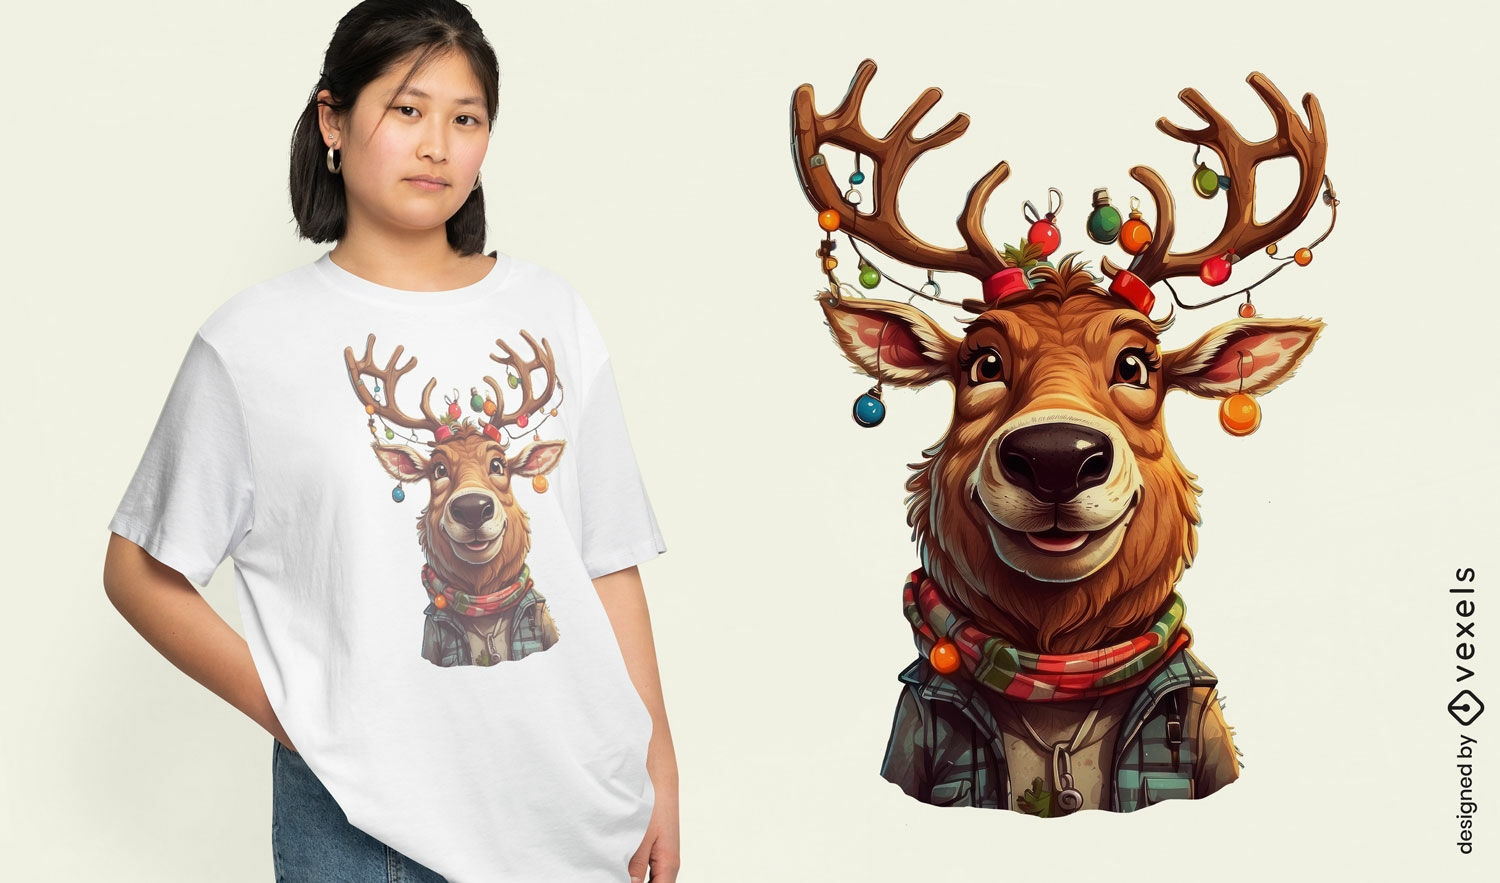 Festliches Weihnachts-Rentier-T-Shirt-Design